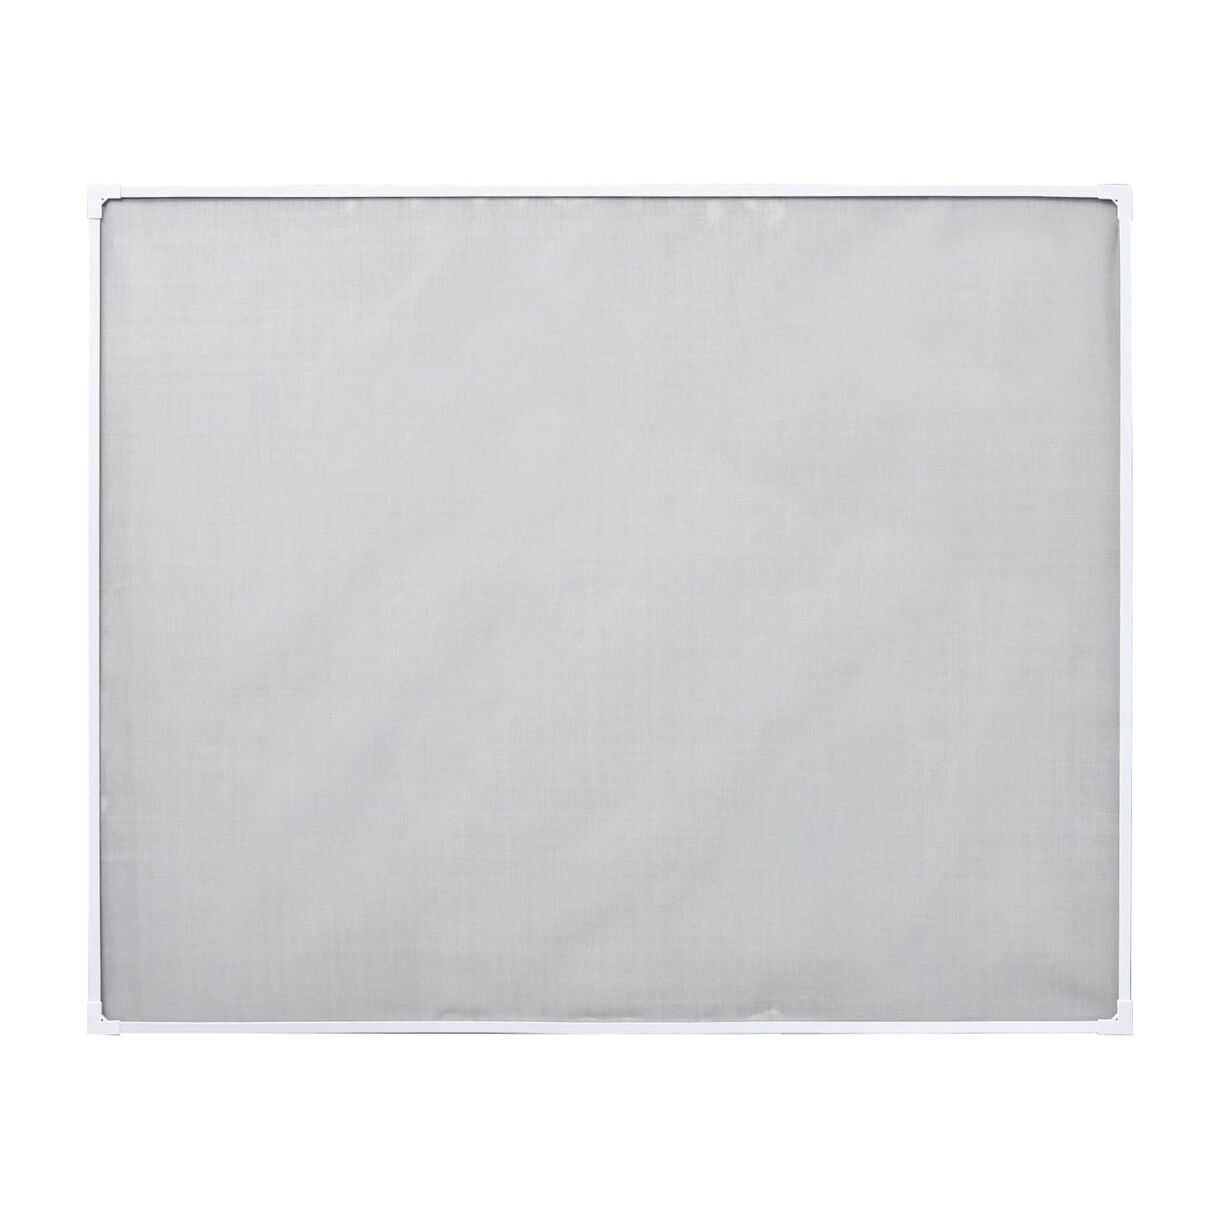 Pantalla mosquitera magnética para ventanas (170 x 180 cm) Blanco y negro